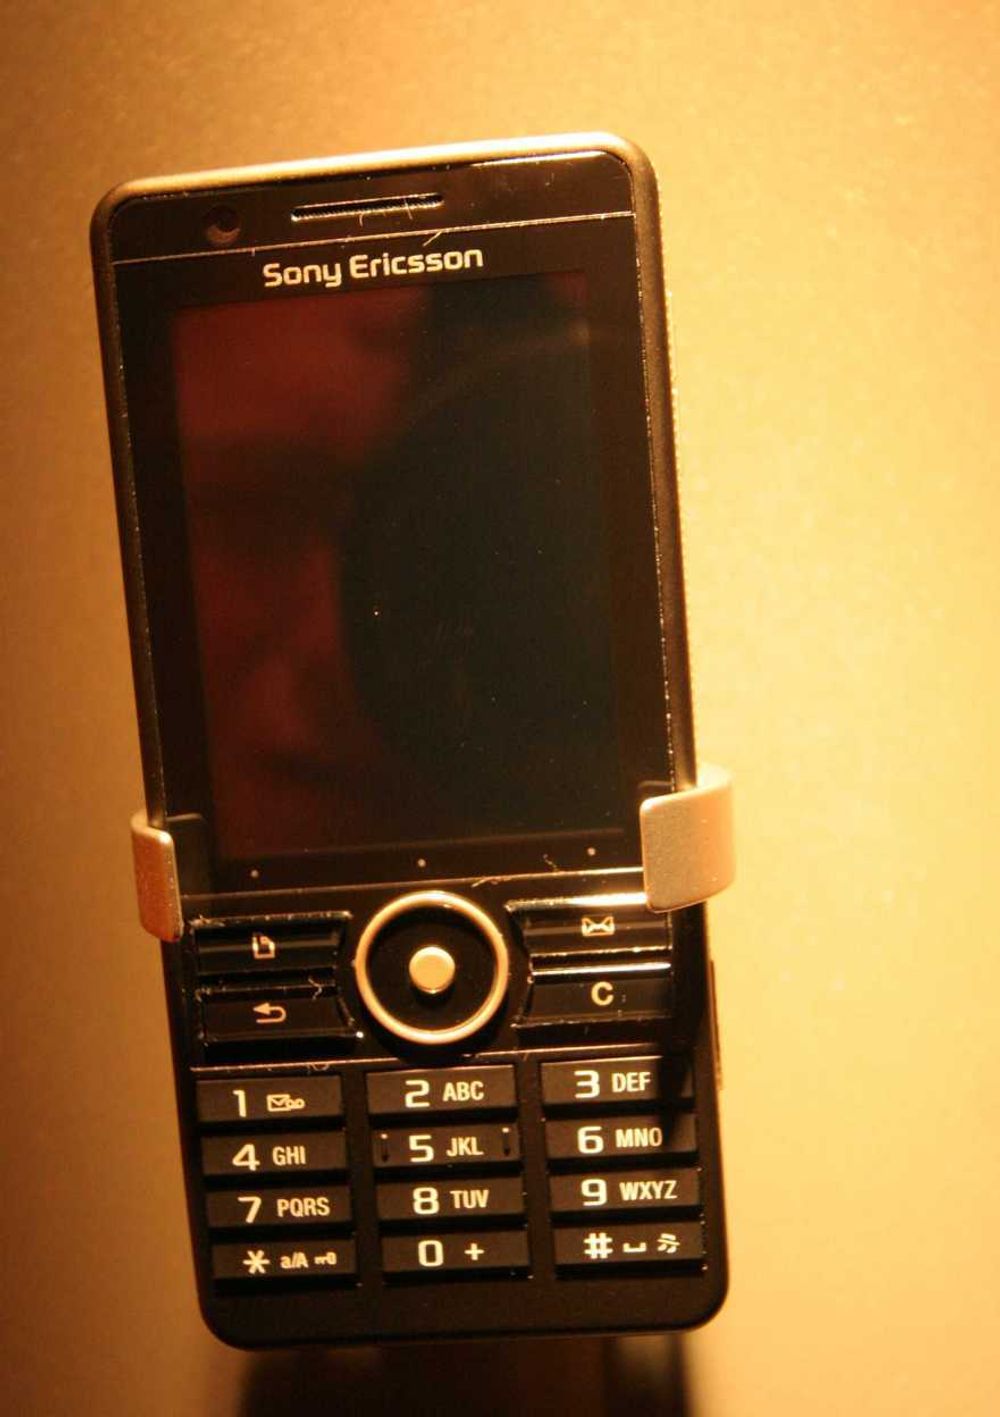 FRONT: Sony Ericsson G900 vil bli populær blant mange i Norge når den kommer i handelen.